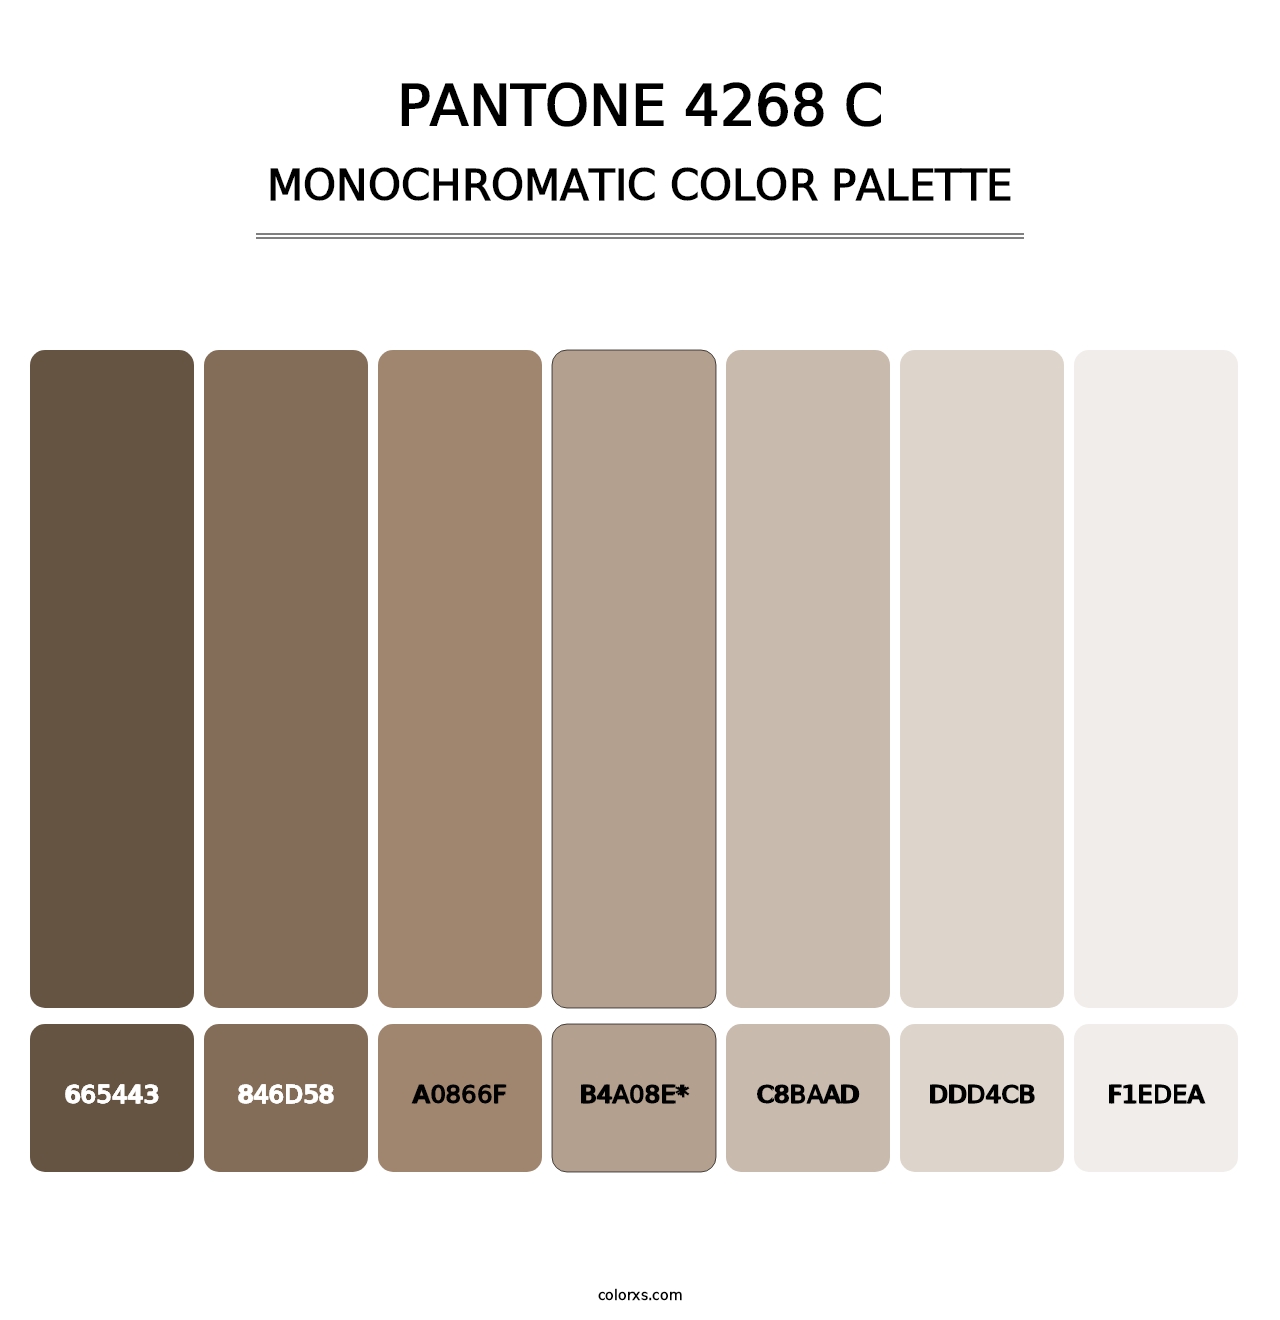 PANTONE 4268 C - Monochromatic Color Palette